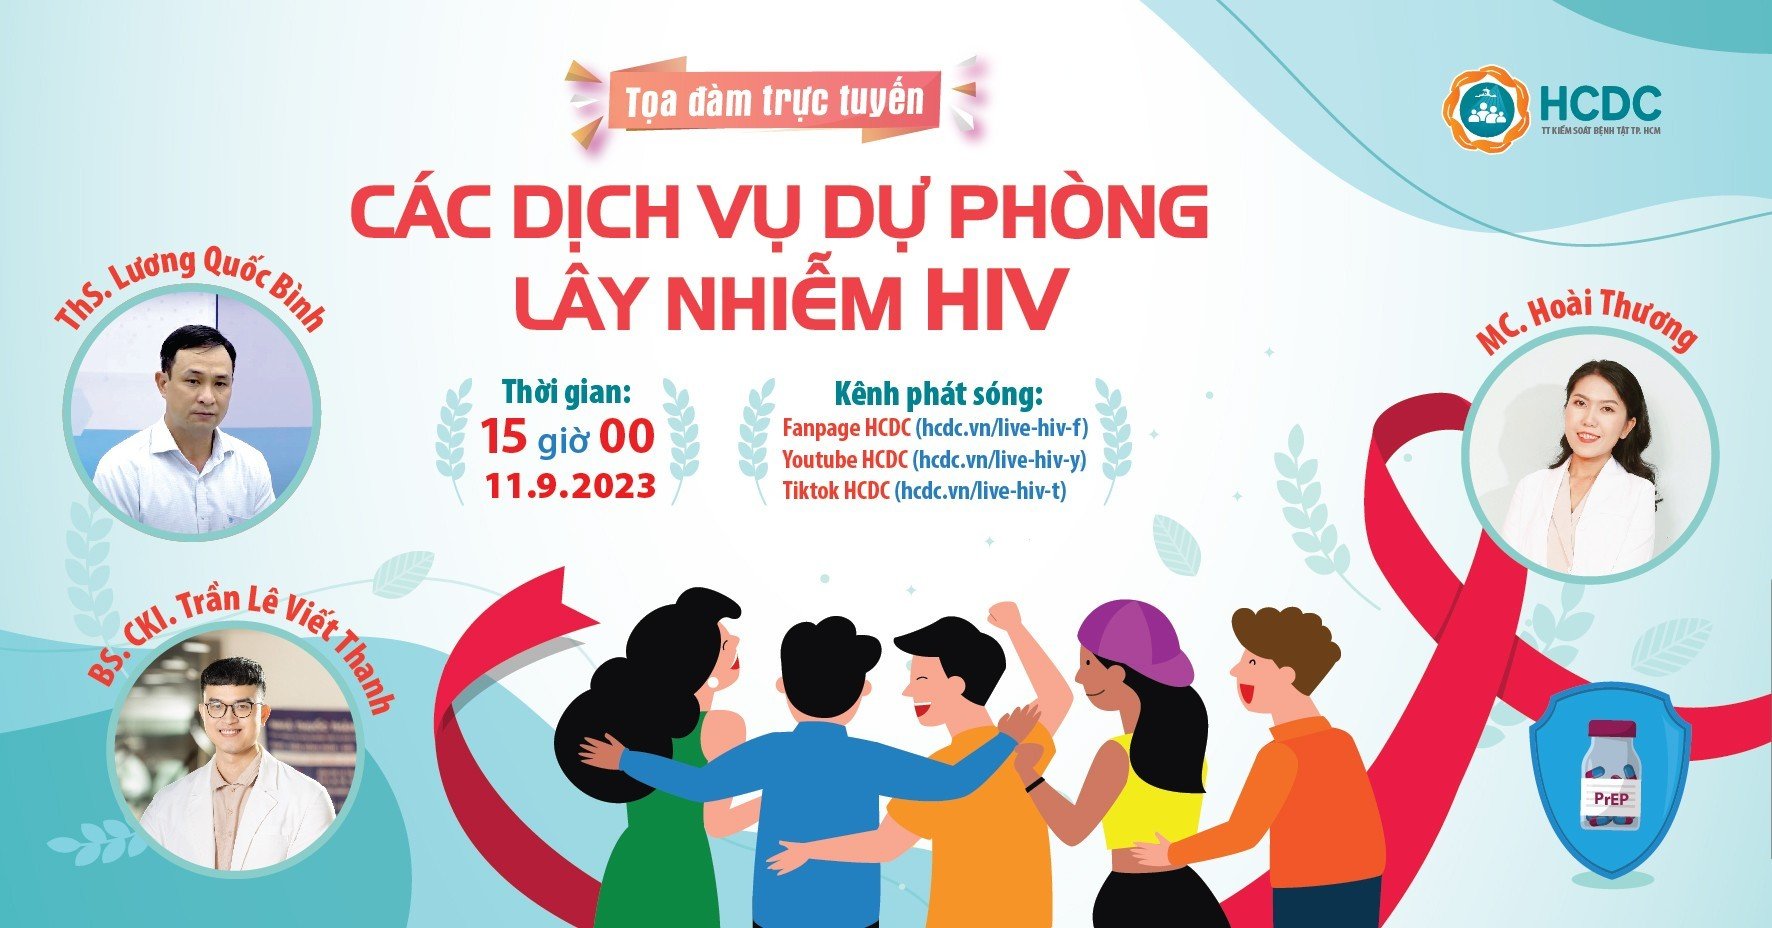 Dự phòng lây nhiễm HIV: Hiểu để bảo vệ chính mình